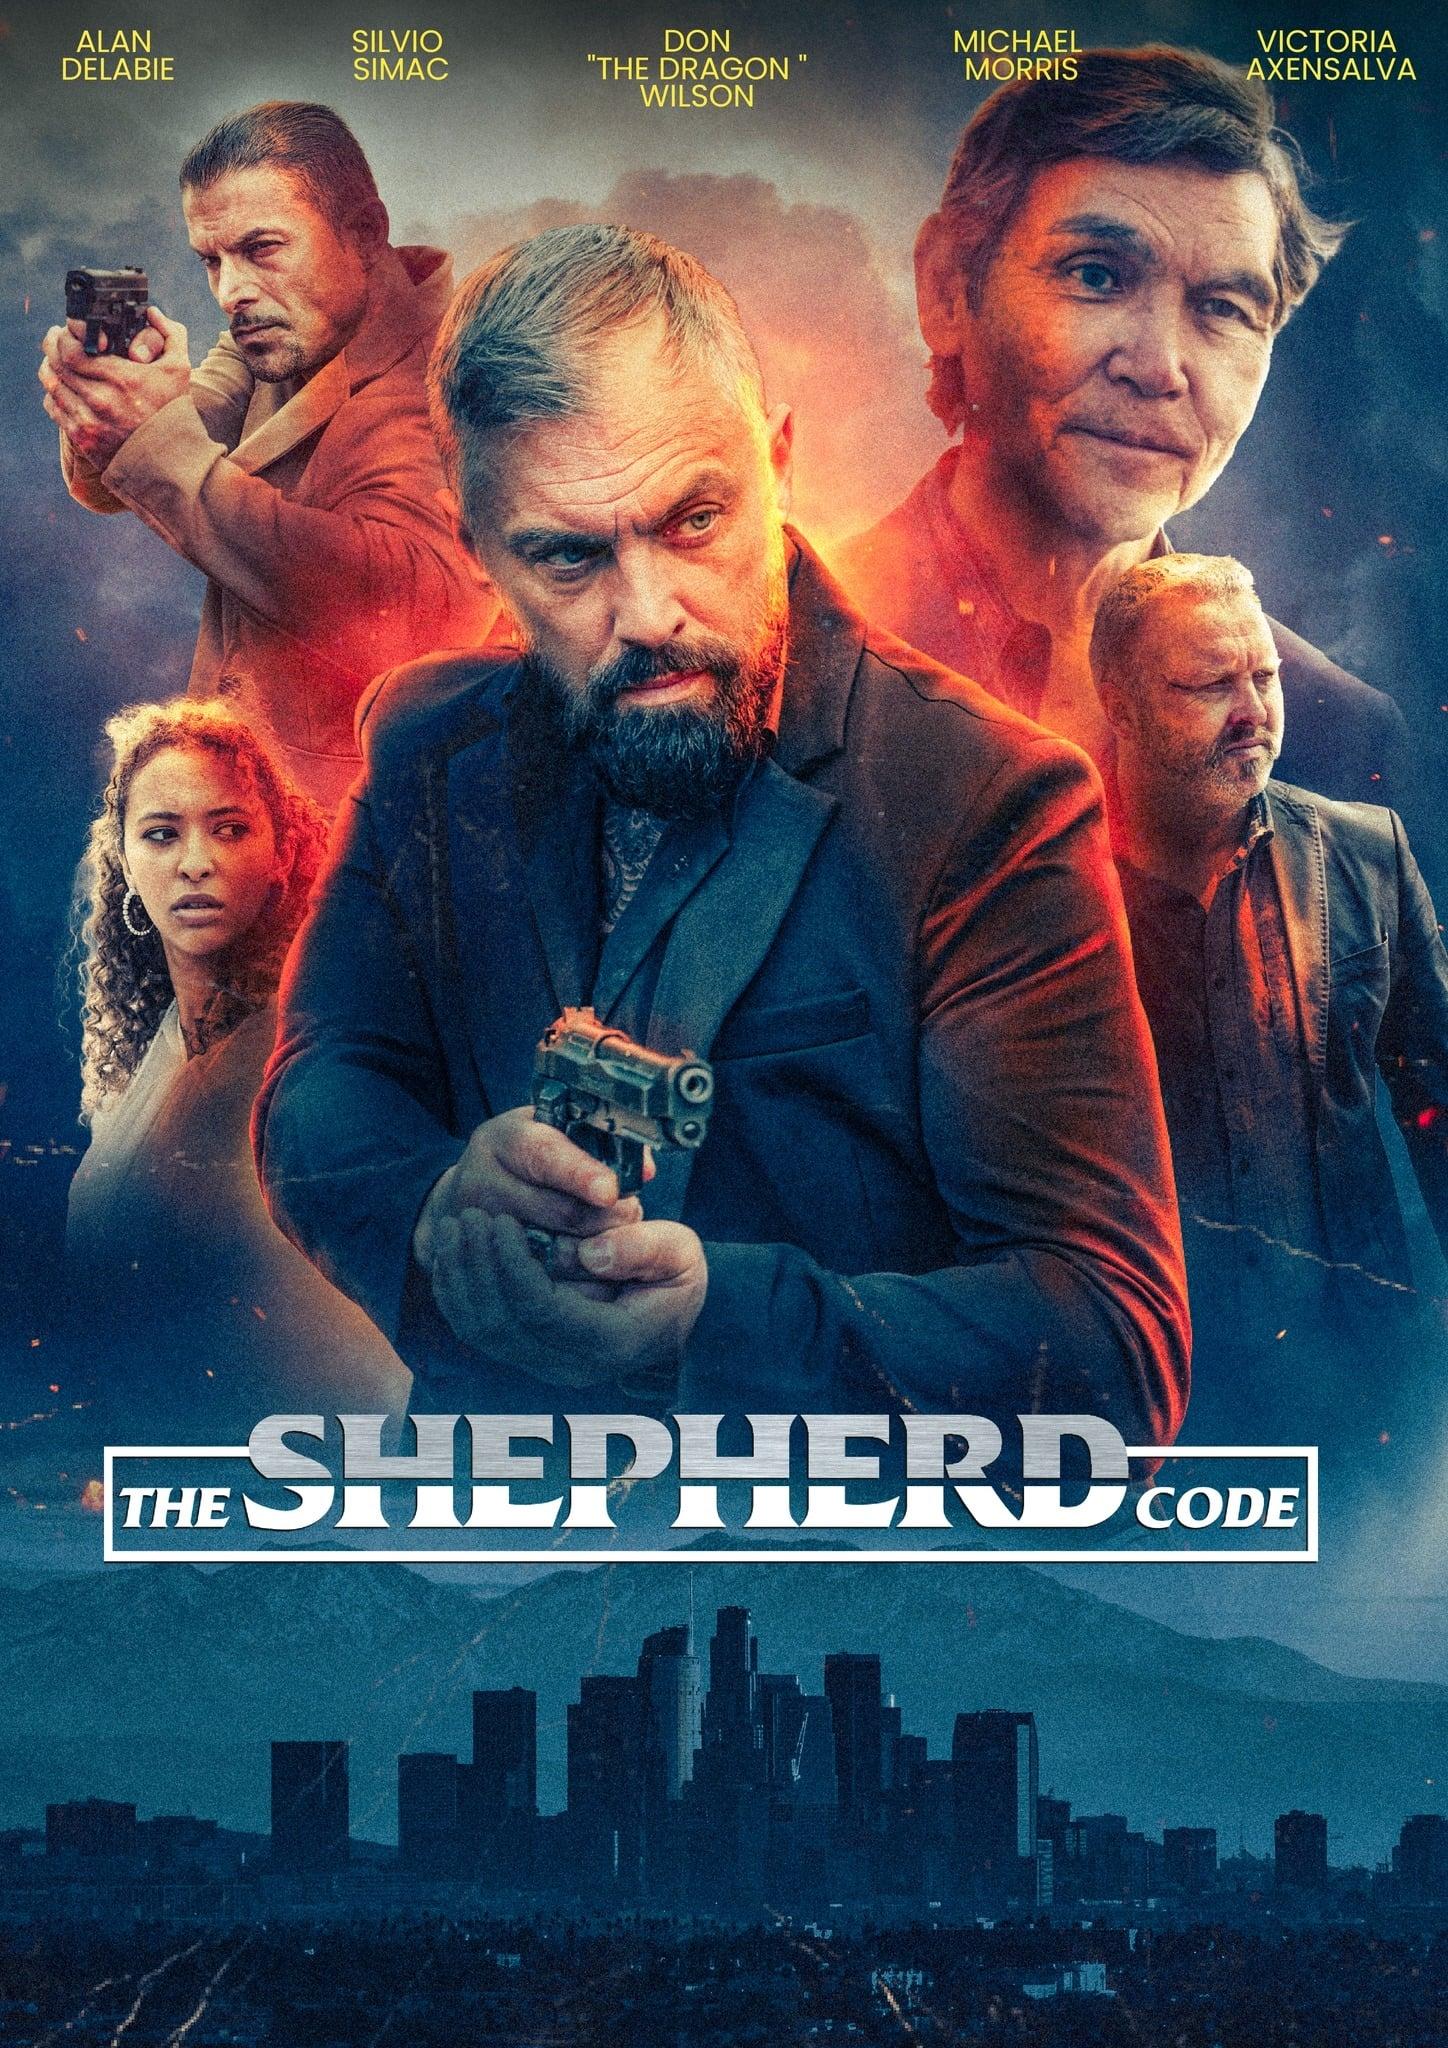 The Shepherd Code poster